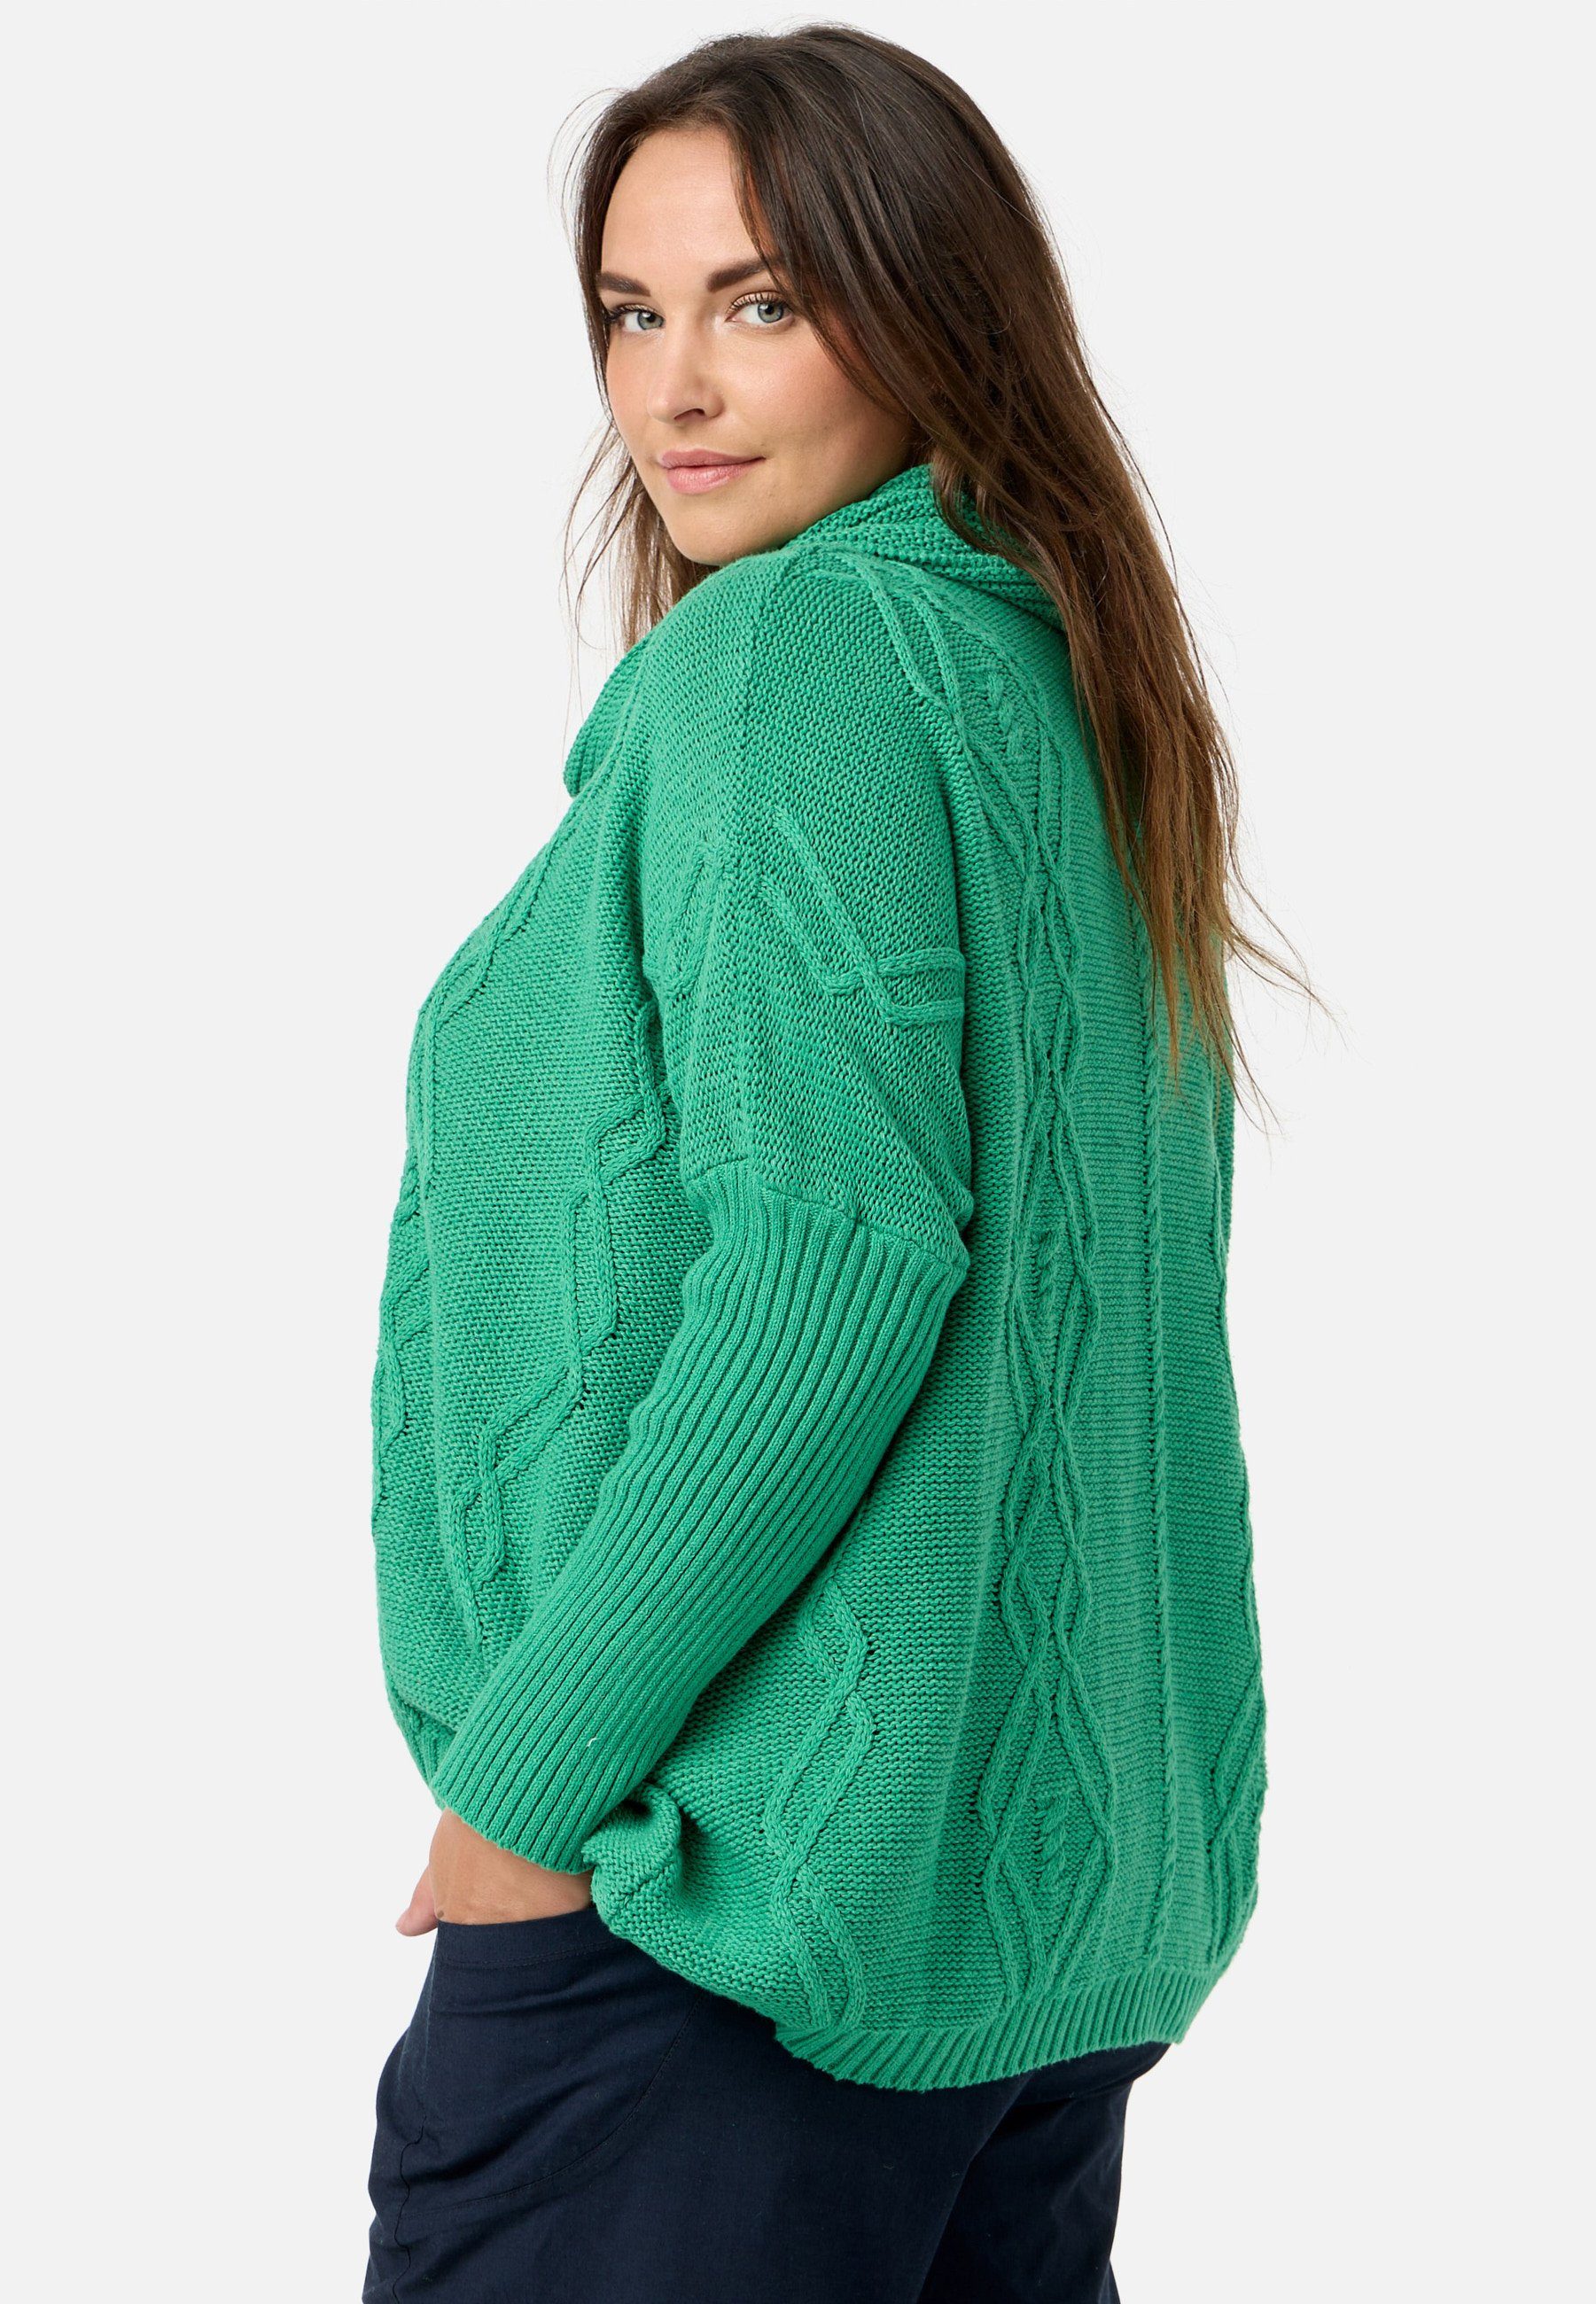 Kekoo Strickpullover Strick Poncho-Shirt mit Baumwolle Schalkragen 100% Smaragd aus 'Pure'